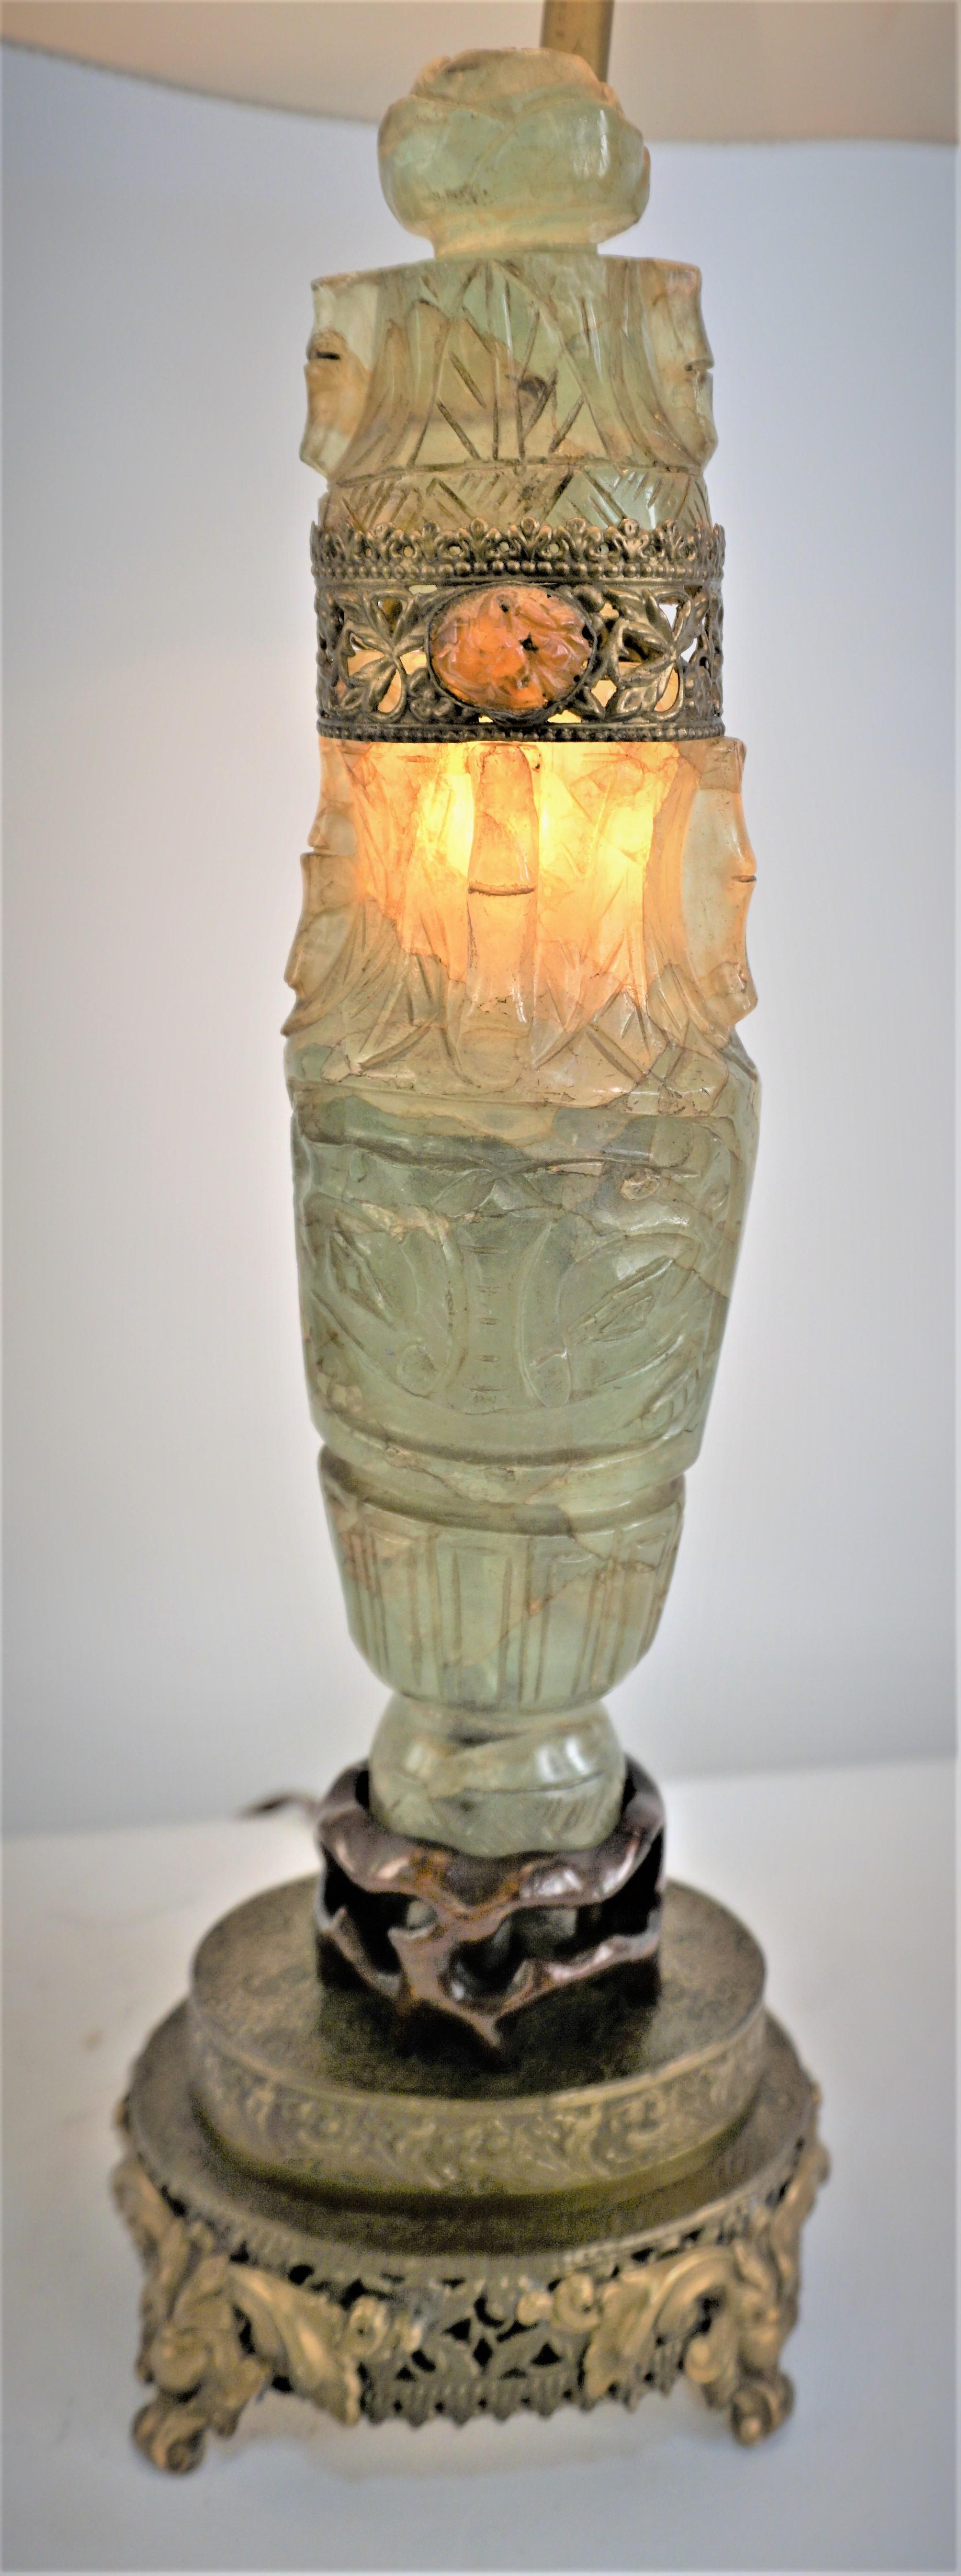 Antike chinesische handgeschnitzte grüne Jade Tischlampe mit Palisander und Messing Basis, es ist Nachtlicht im Inneren der grünen Jade.
Diese Lampe ist mit einem handgefertigten Lampenschirm aus Seide ausgestattet.
Professionell neu verkabelt und